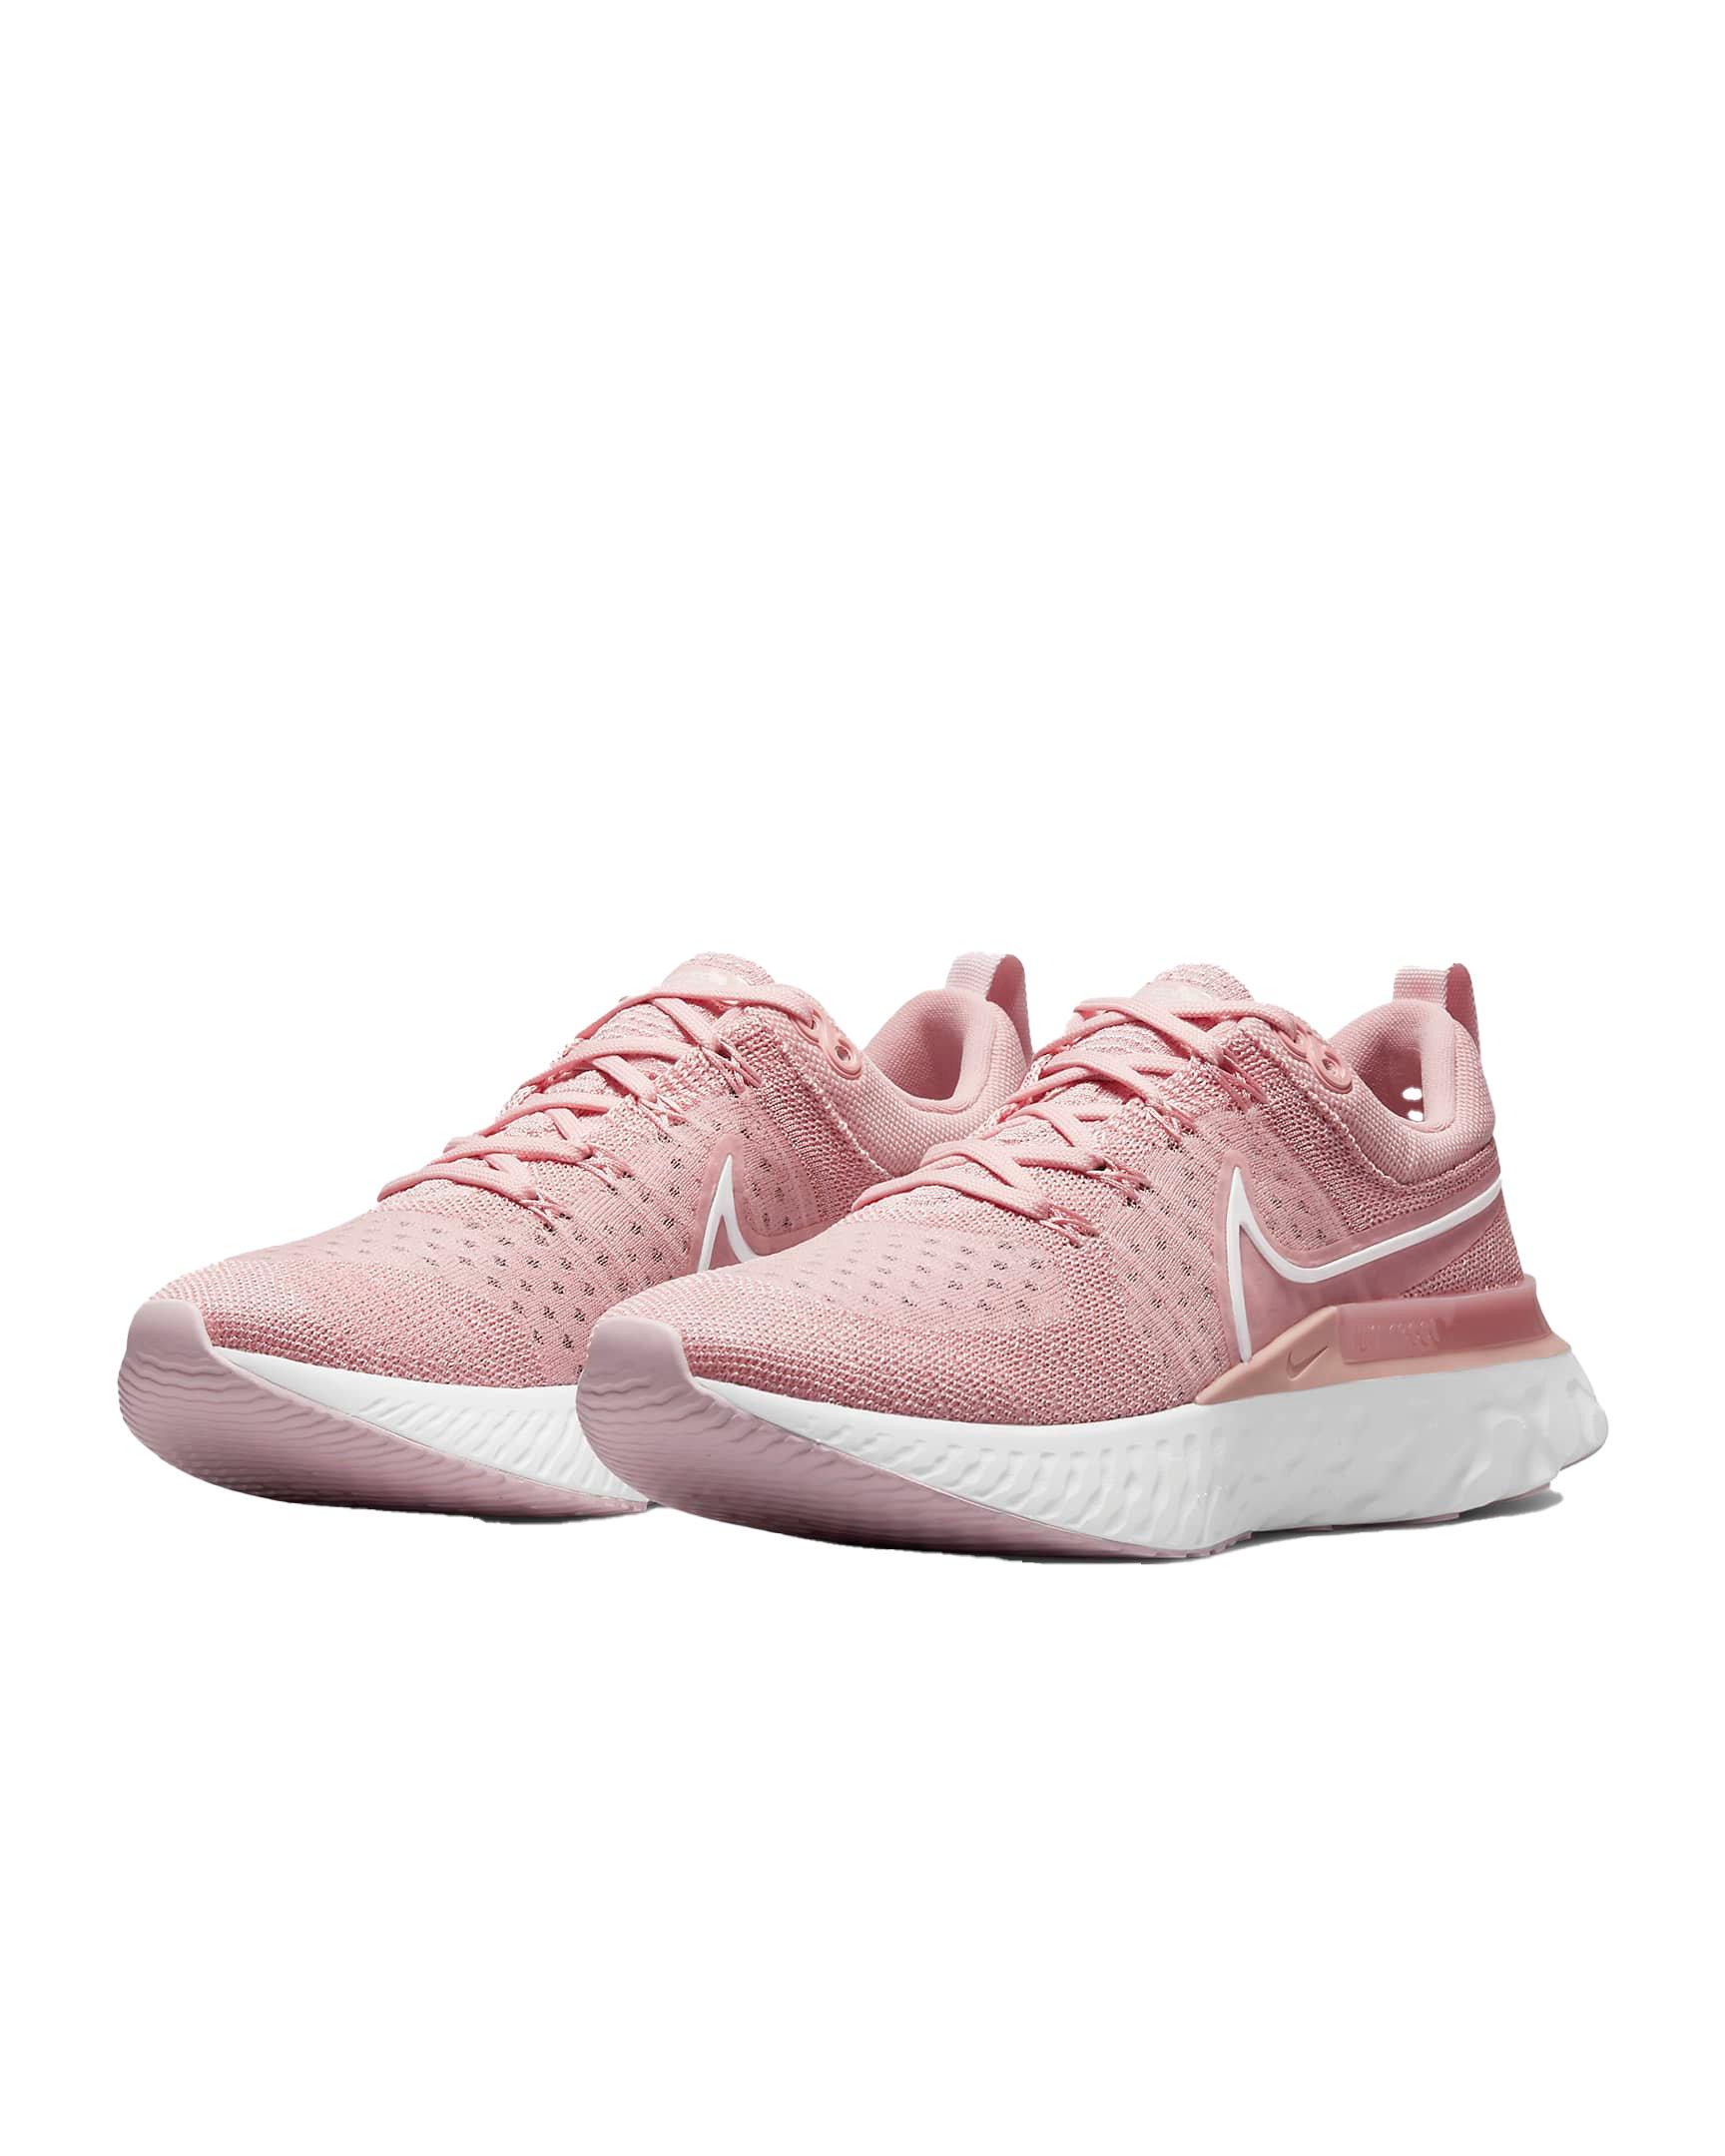 Dosering Verliefd Alternatief Nike React Infinity 2 "Pink" Women's Running Shoe